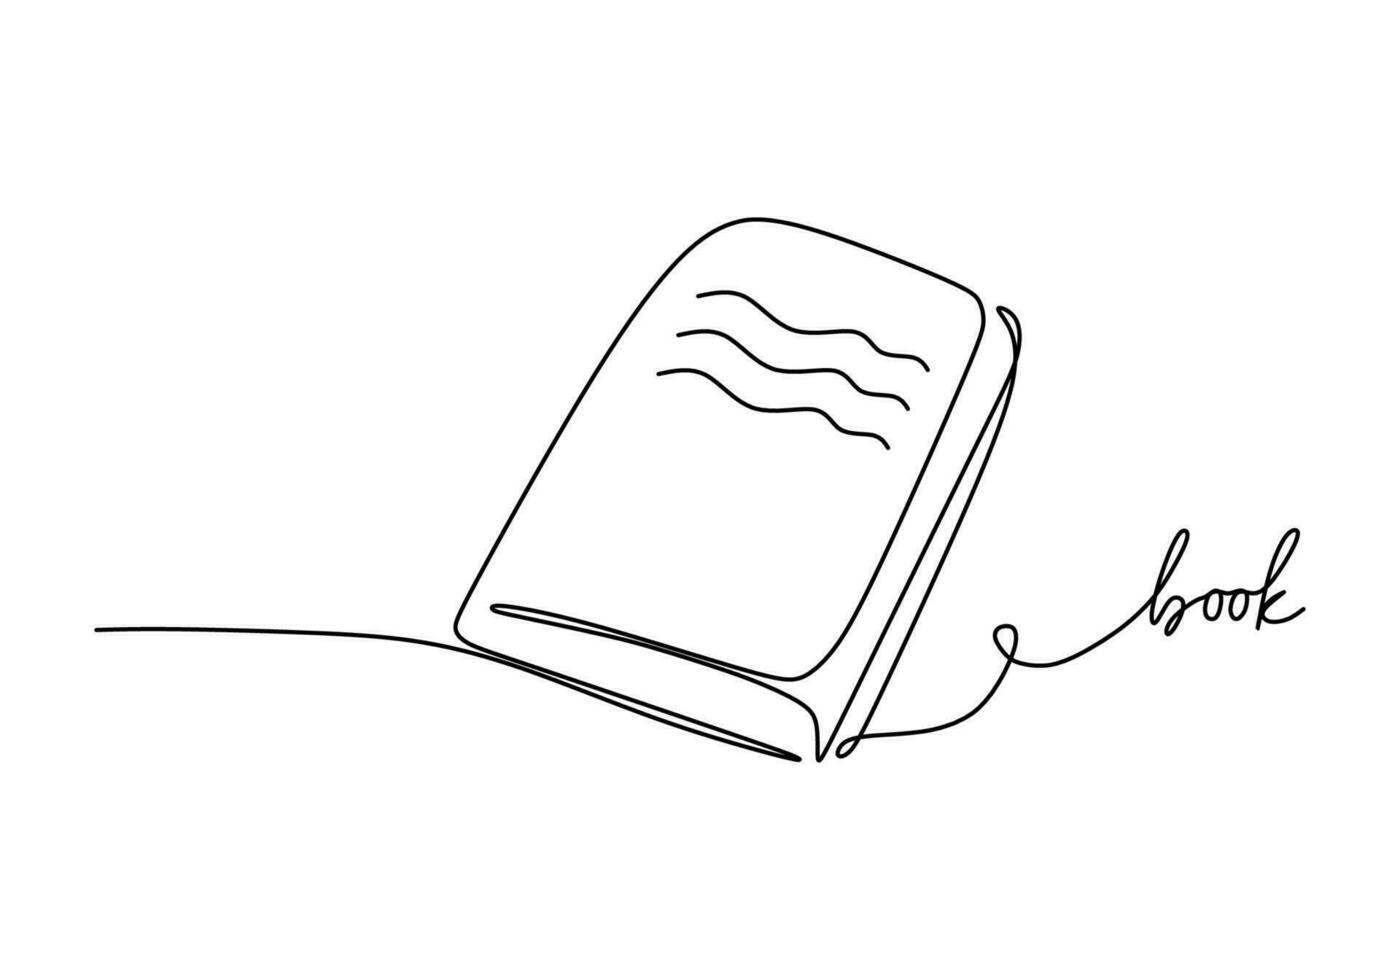 boek - school- onderwijs object, een lijn tekening doorlopend ontwerp vector